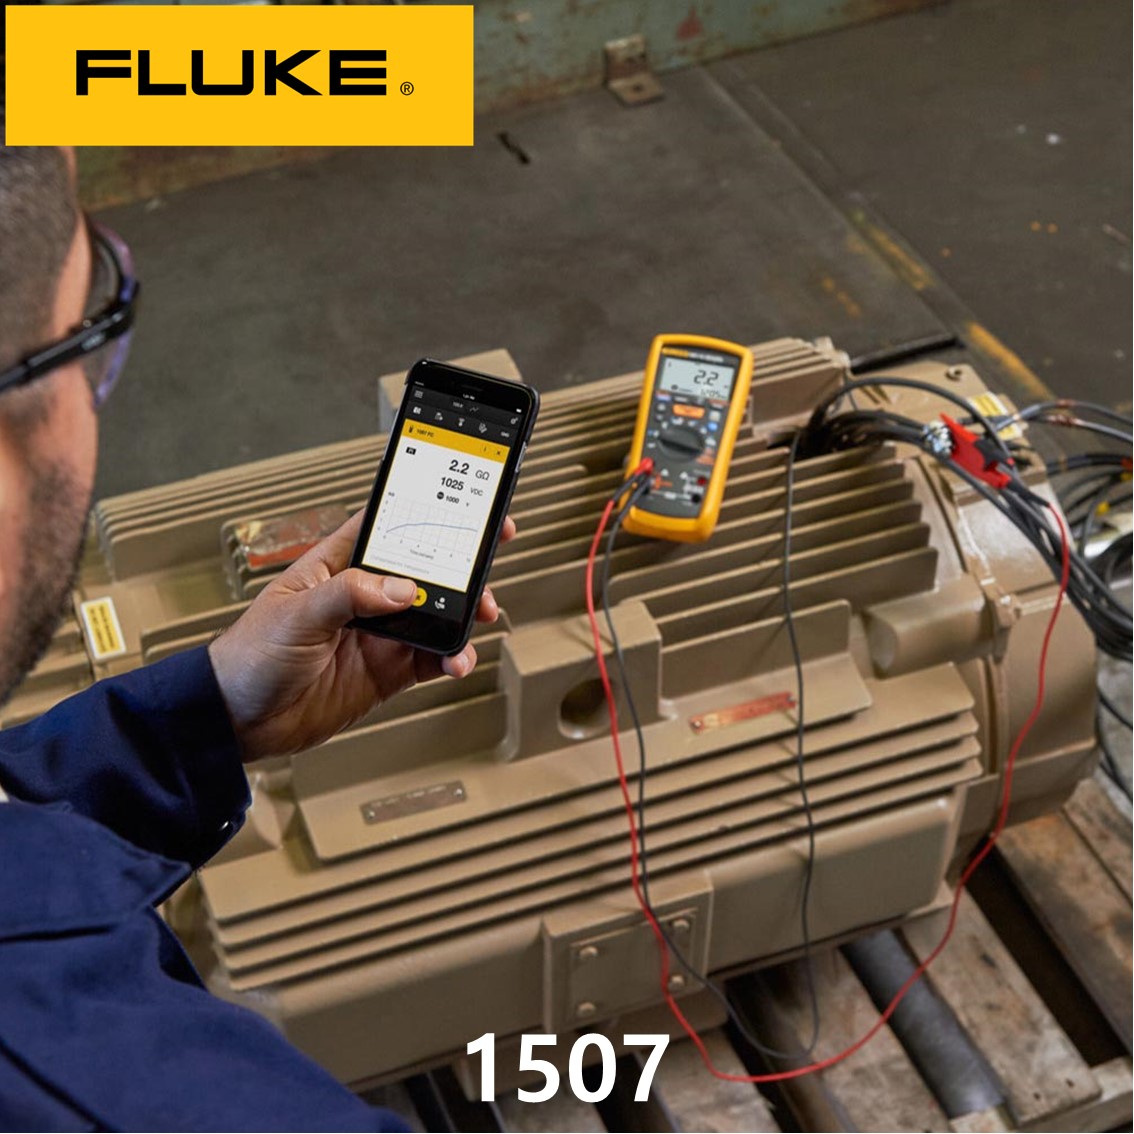 [ FLUKE 1507 ] 정품 플루크 절연저항계 1507, 절연시험기, 절연저항테스터